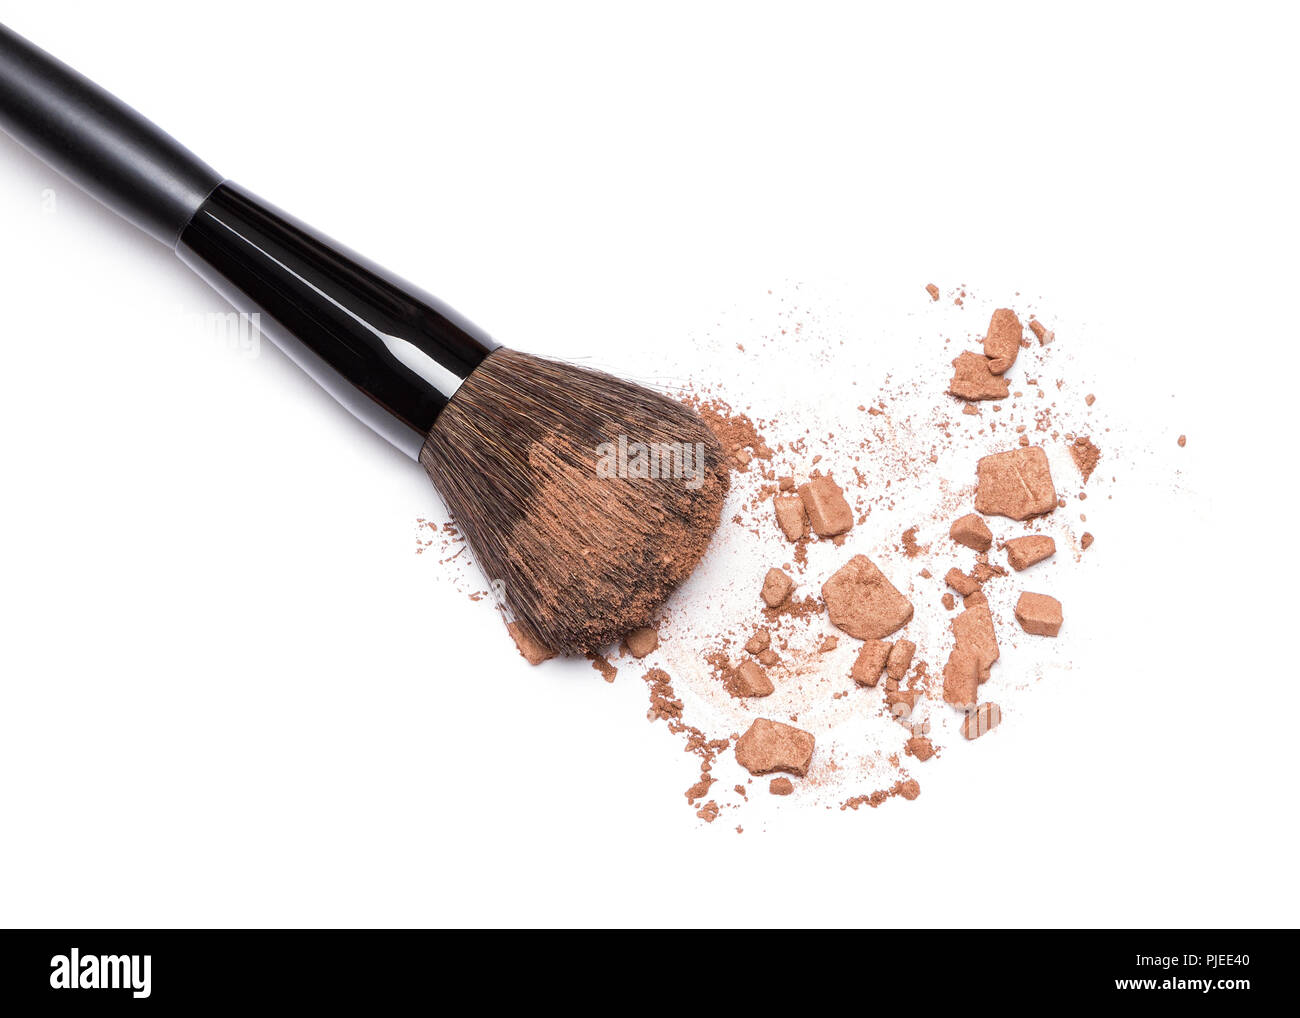 Close-up de poudre bronzante avec brosse de maquillage sur fond blanc. Bronzeur visage contourage ou la création de look bronzé Banque D'Images